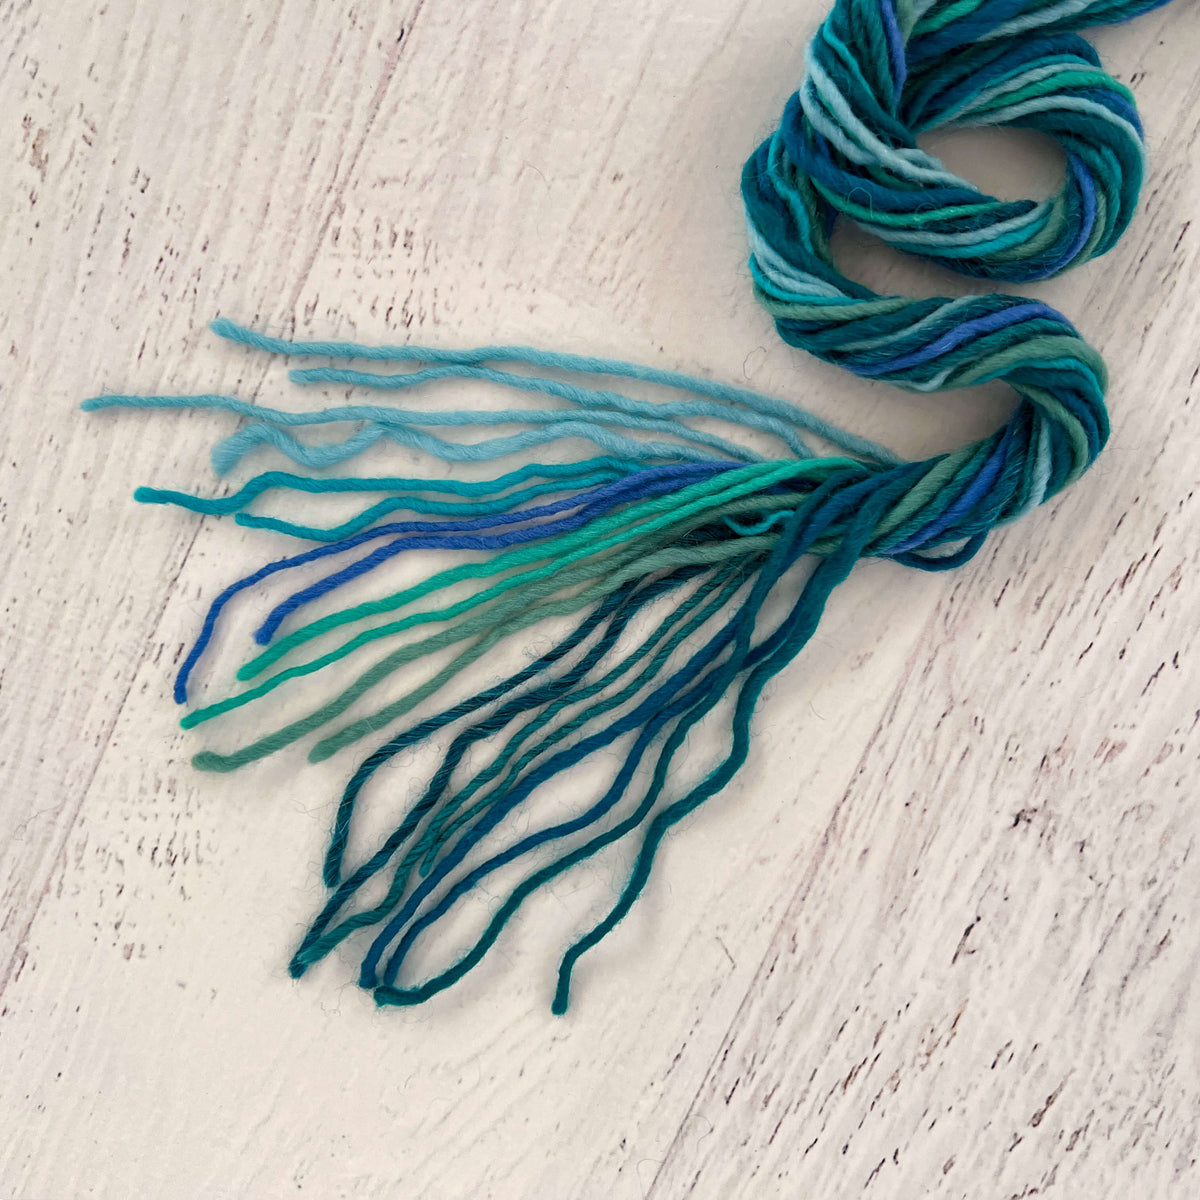 Mini Yarn Skeins- Colors of the Ocean